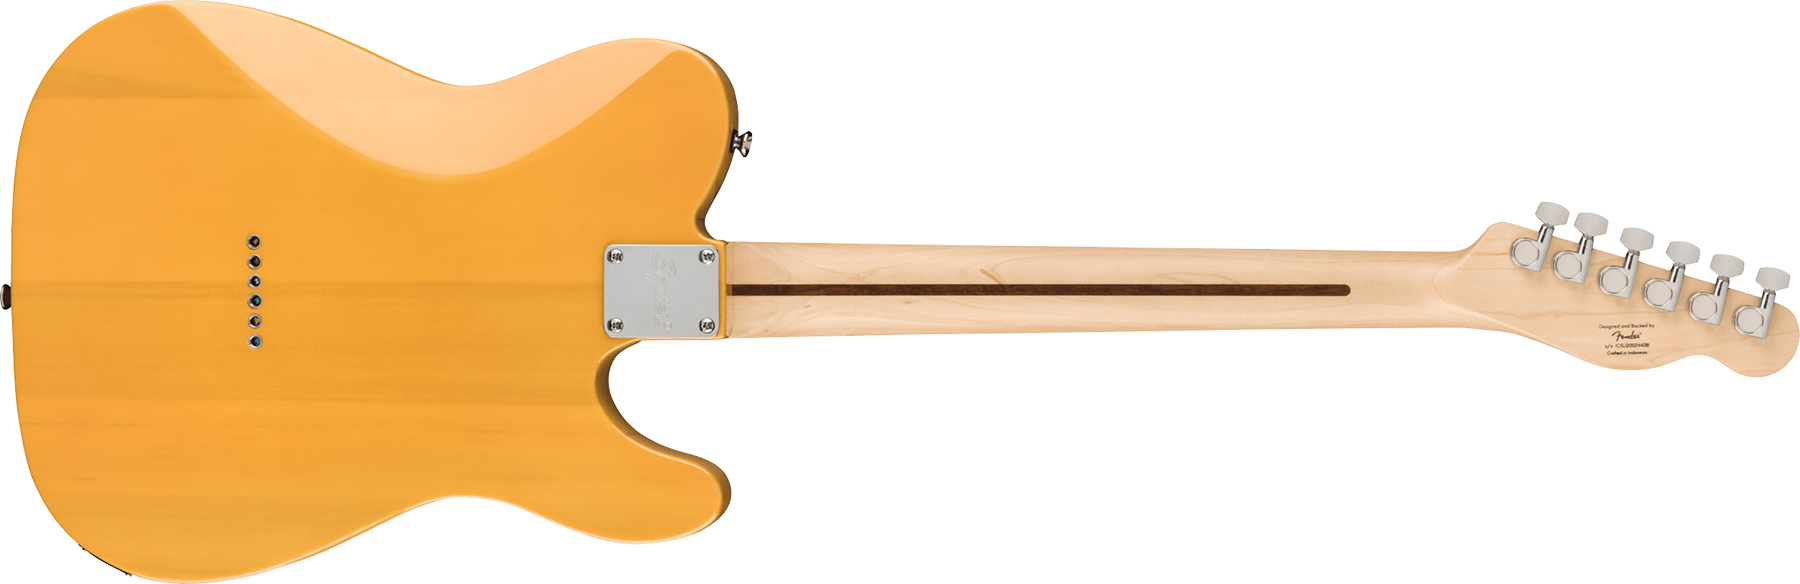 Squier Tele Affinity Gaucher 2021 2s Mn - Butterscotch Blonde - Linkshandige elektrische gitaar - Variation 1